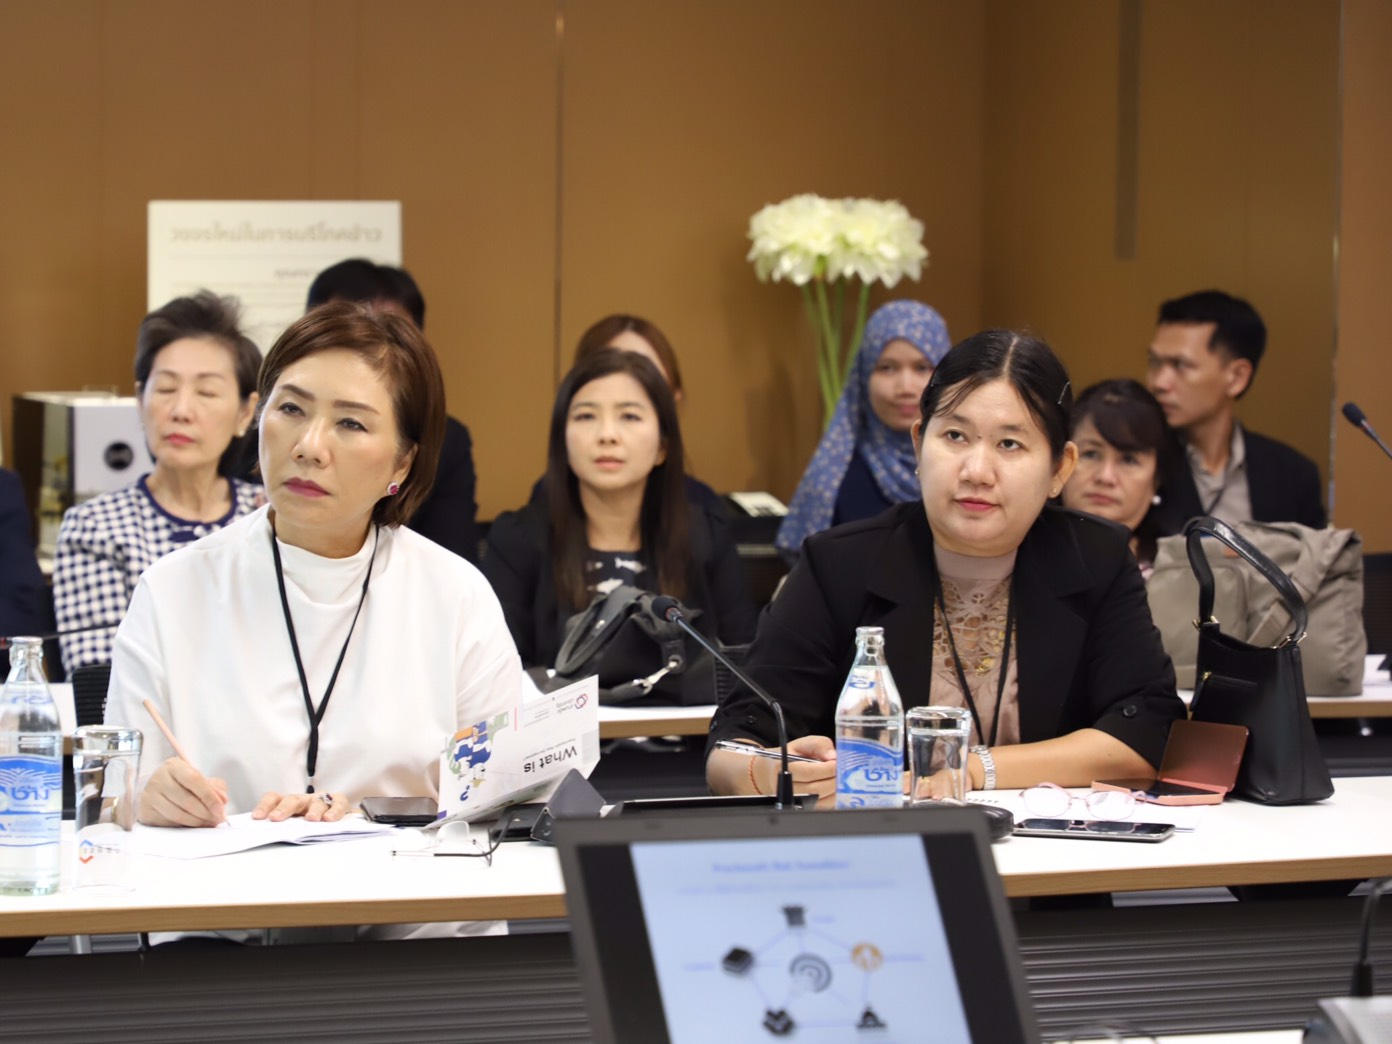 การประชุมโครงการส่งเสริมกิจการเพื่อสังคมในภูมิภาคอาเซียน (ASEAN +3 Conference on Social Enterprises)